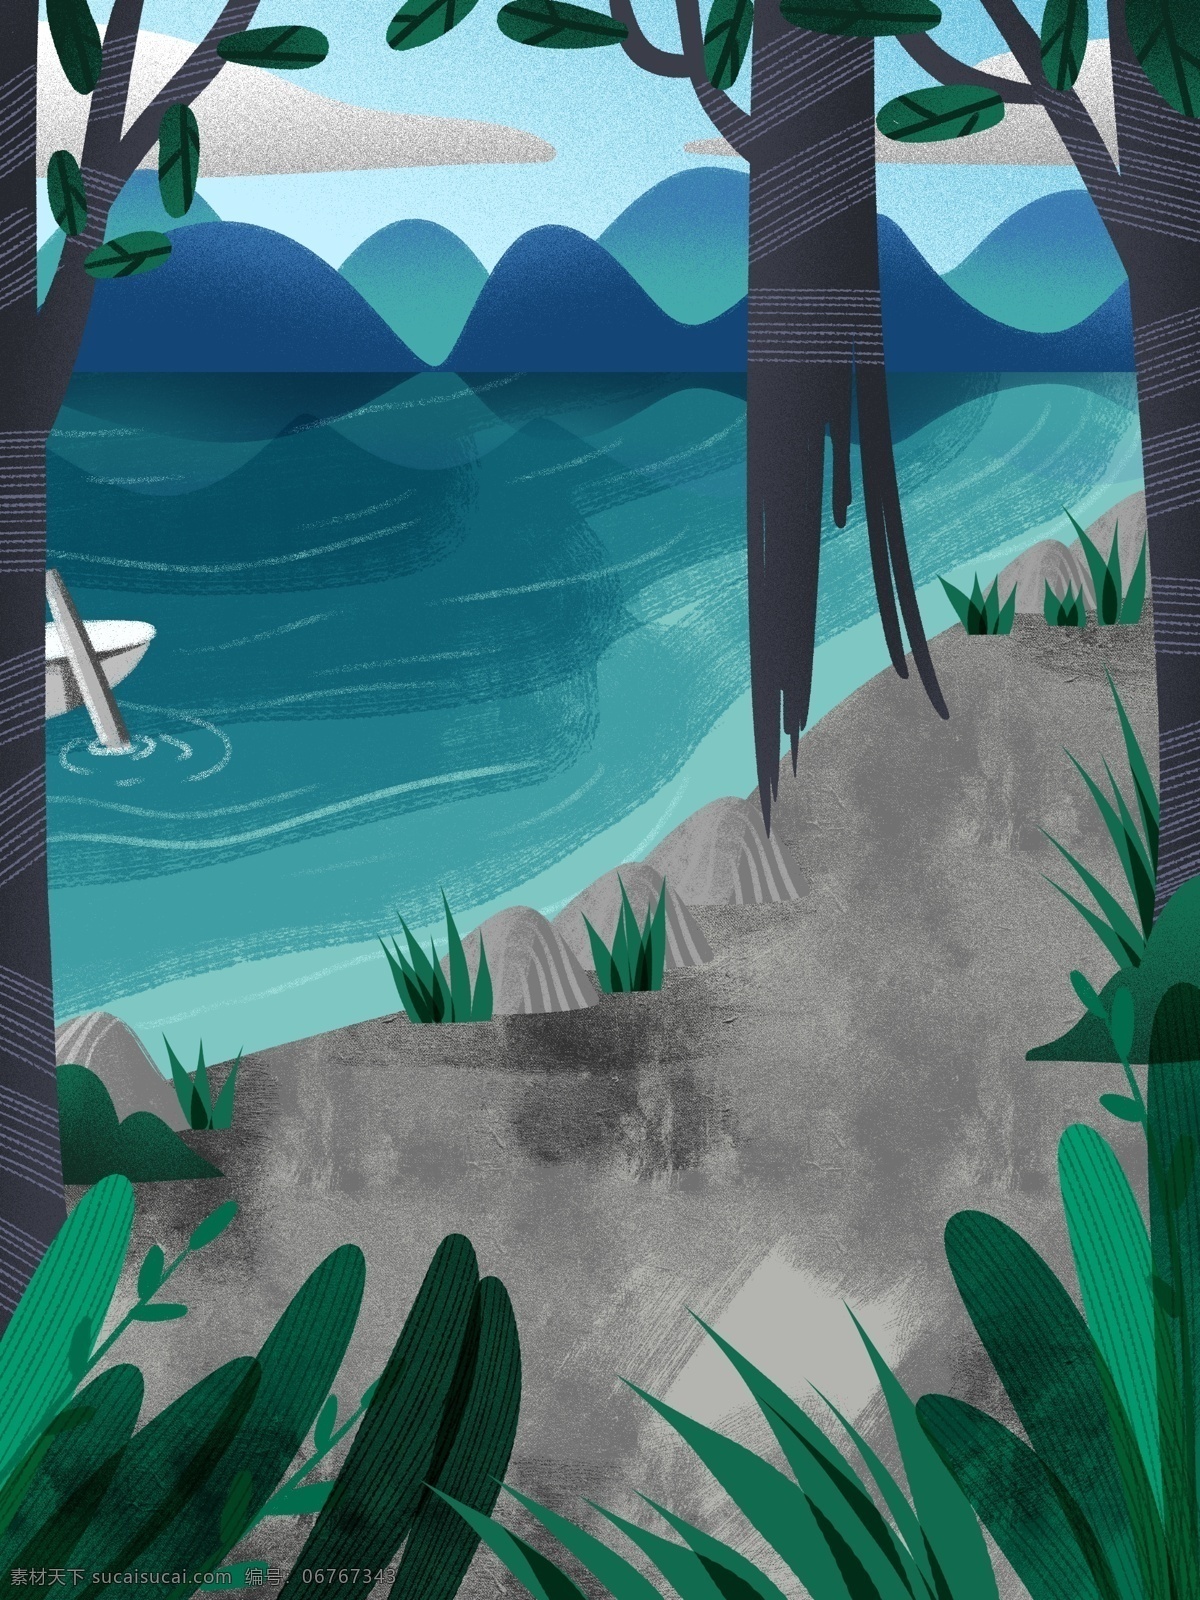 踏青 清明节 户外 风景 背景 植物 湖泊 卡通 彩色 创意 装饰 设计背景 海报背景 简约 图案